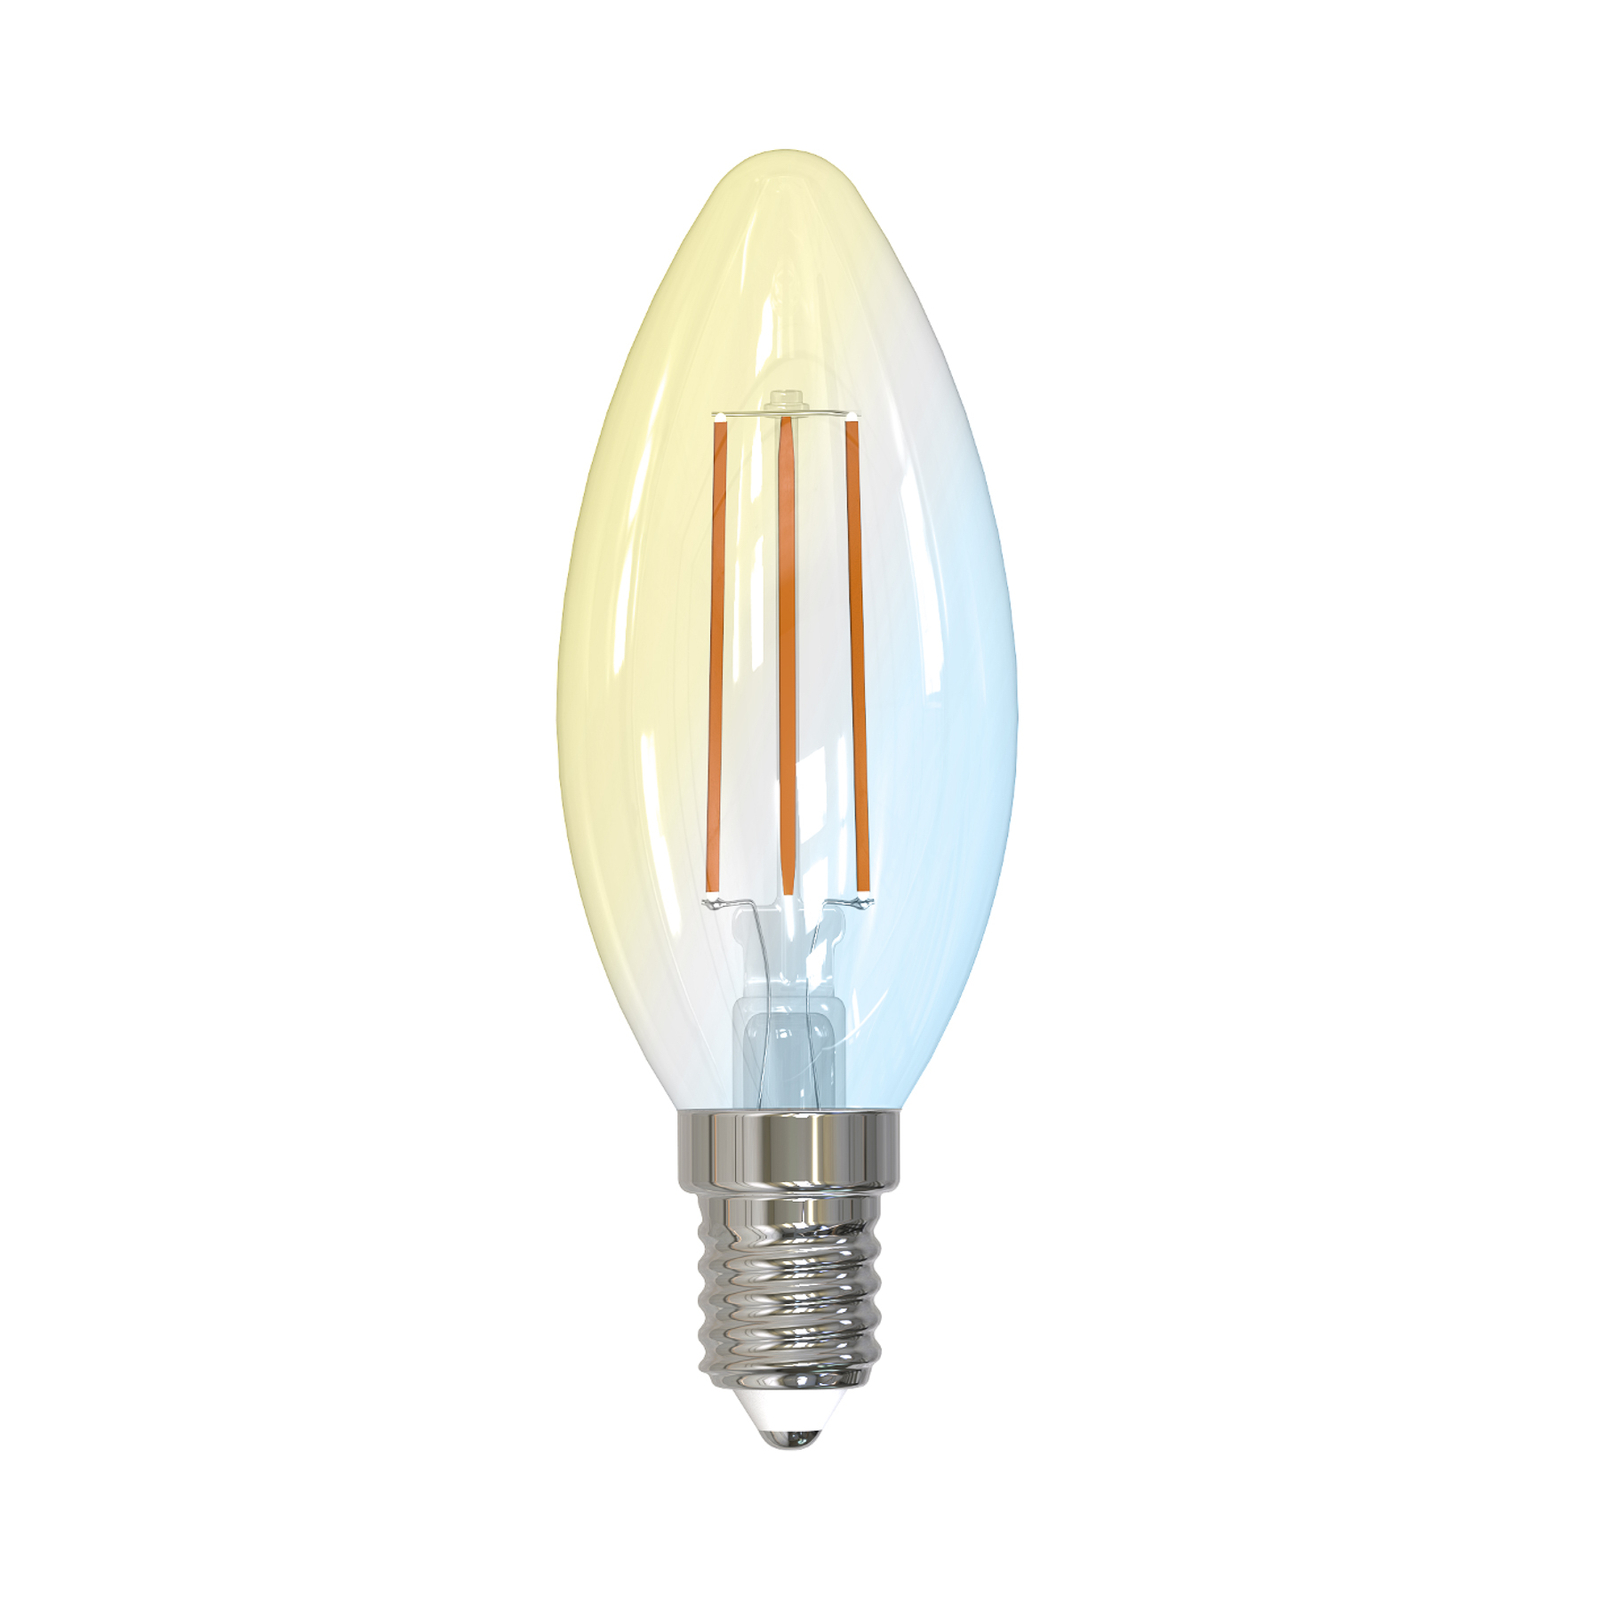 Smart vela LED E14 4,2W WLAN claro tunable white